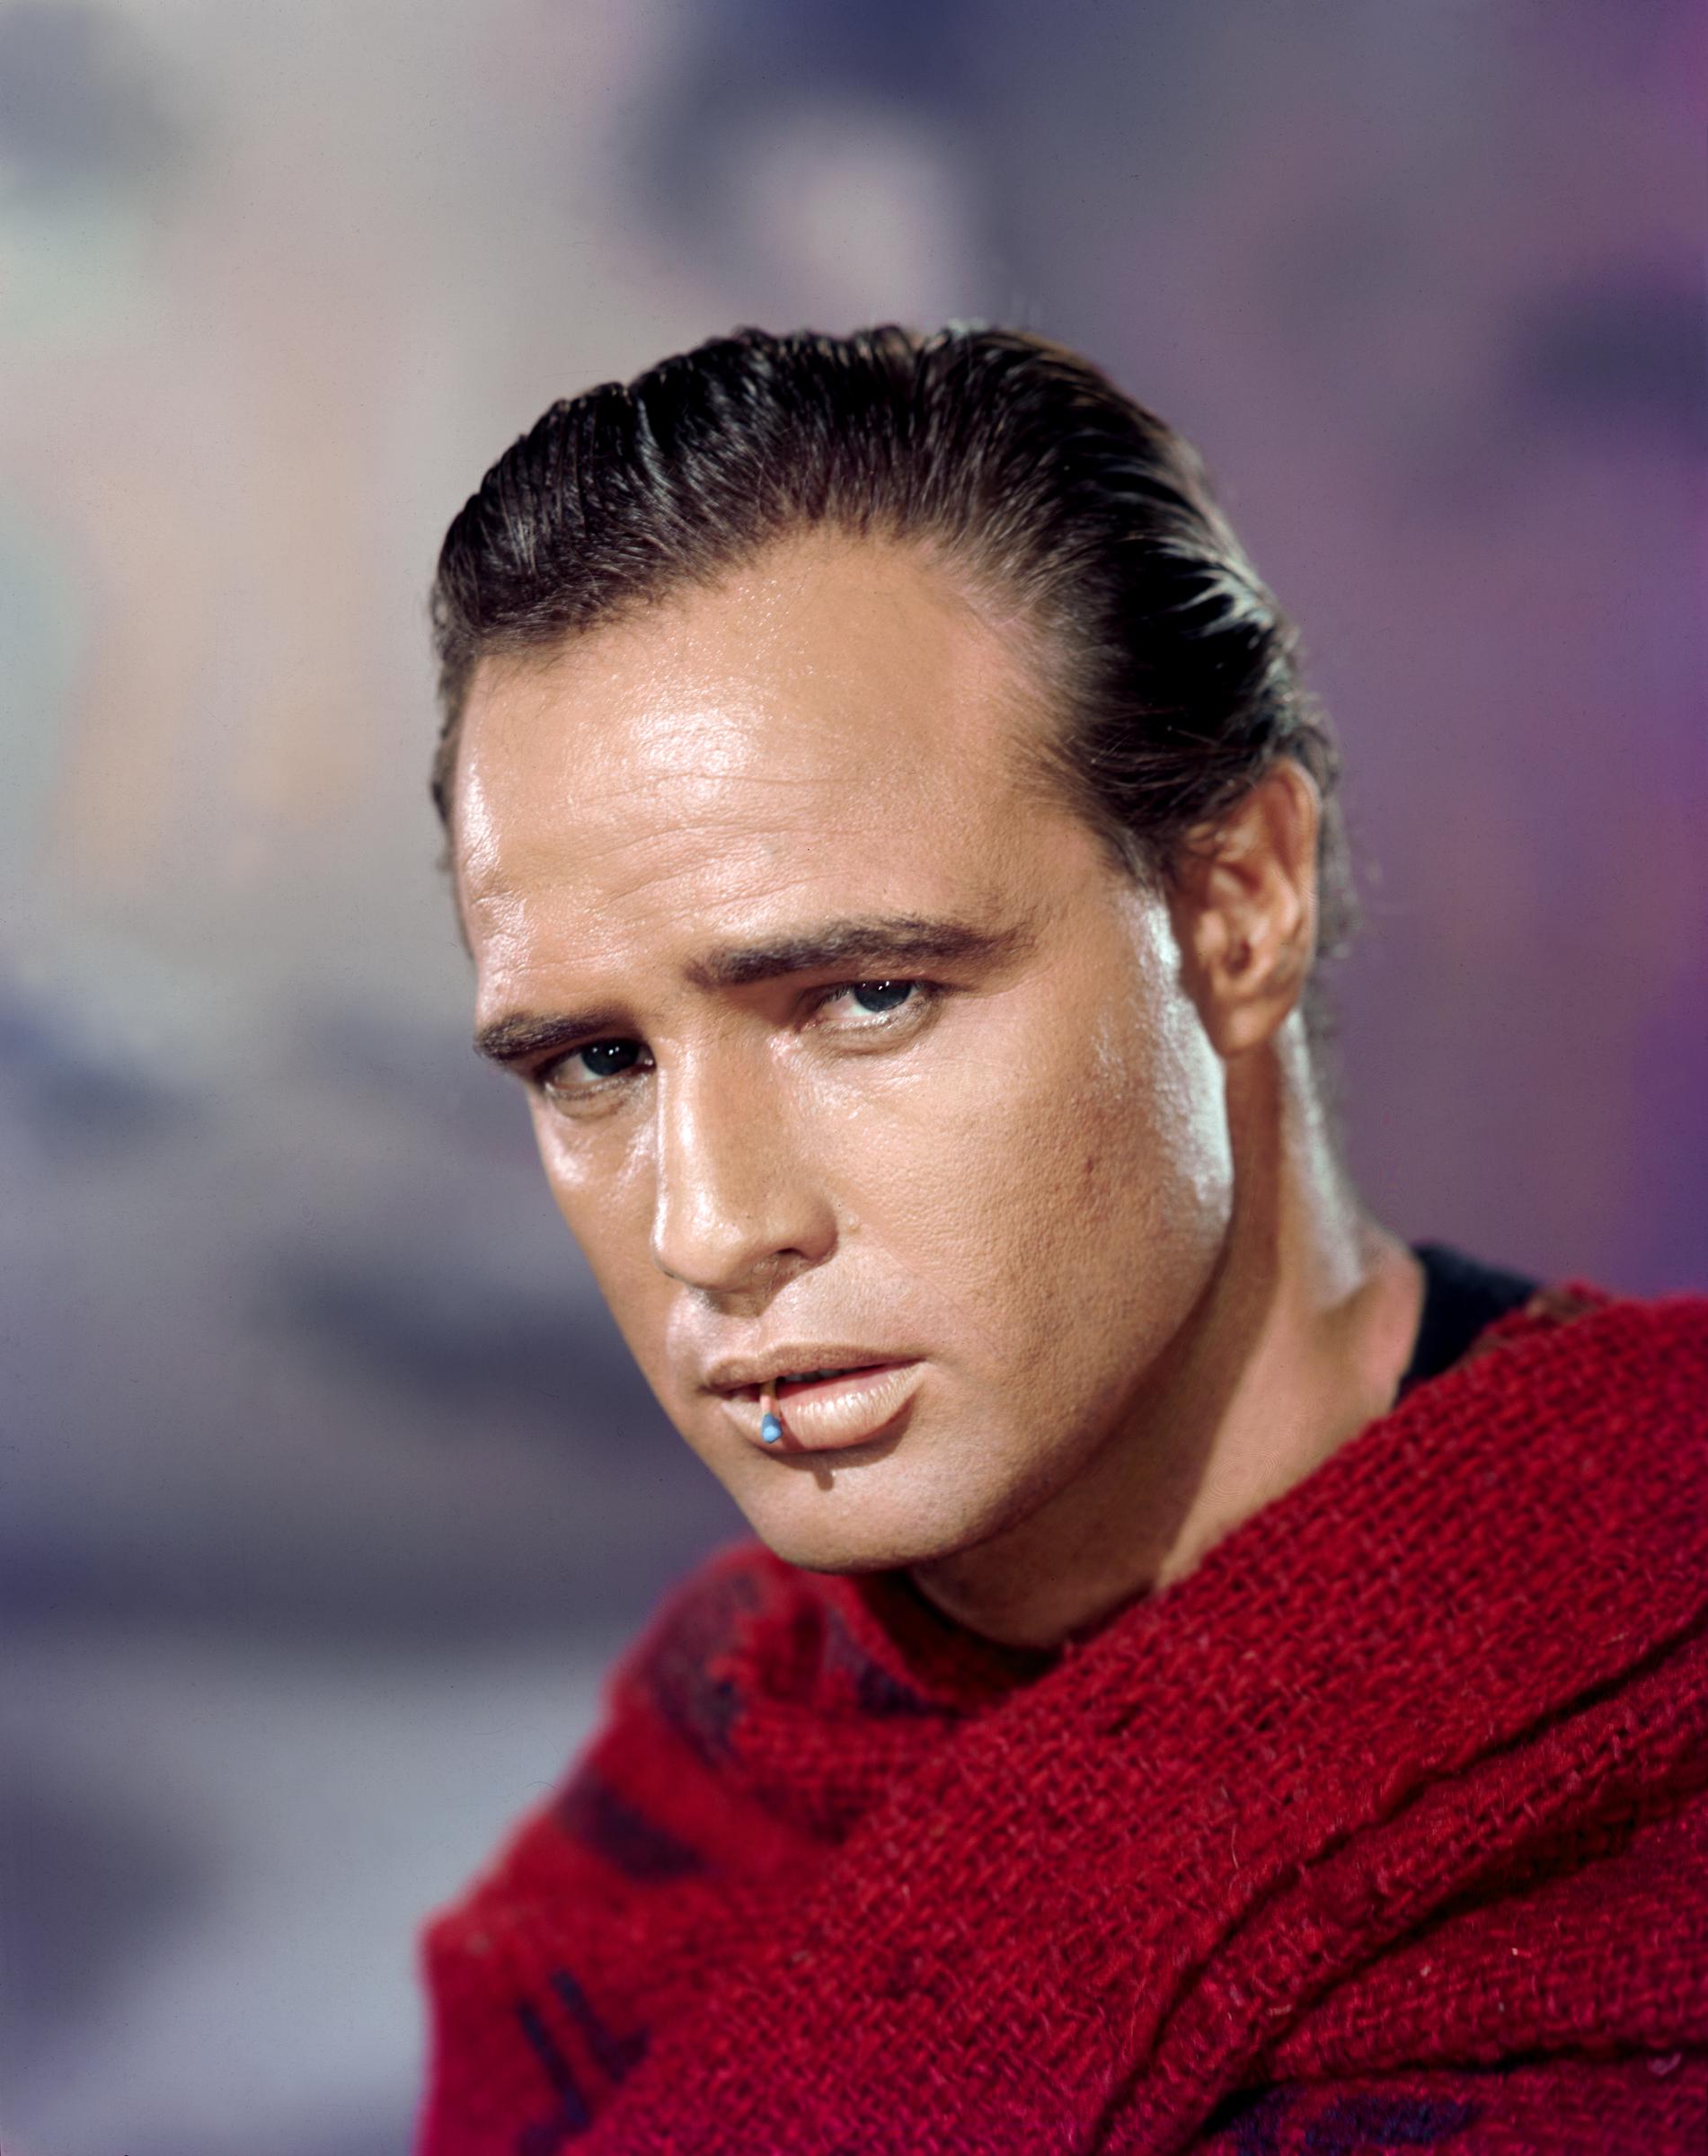 Marlon Brando sur le plateau de tournage de son film One-Eyed Jacks sorti en 1961 | Source : Getty Images